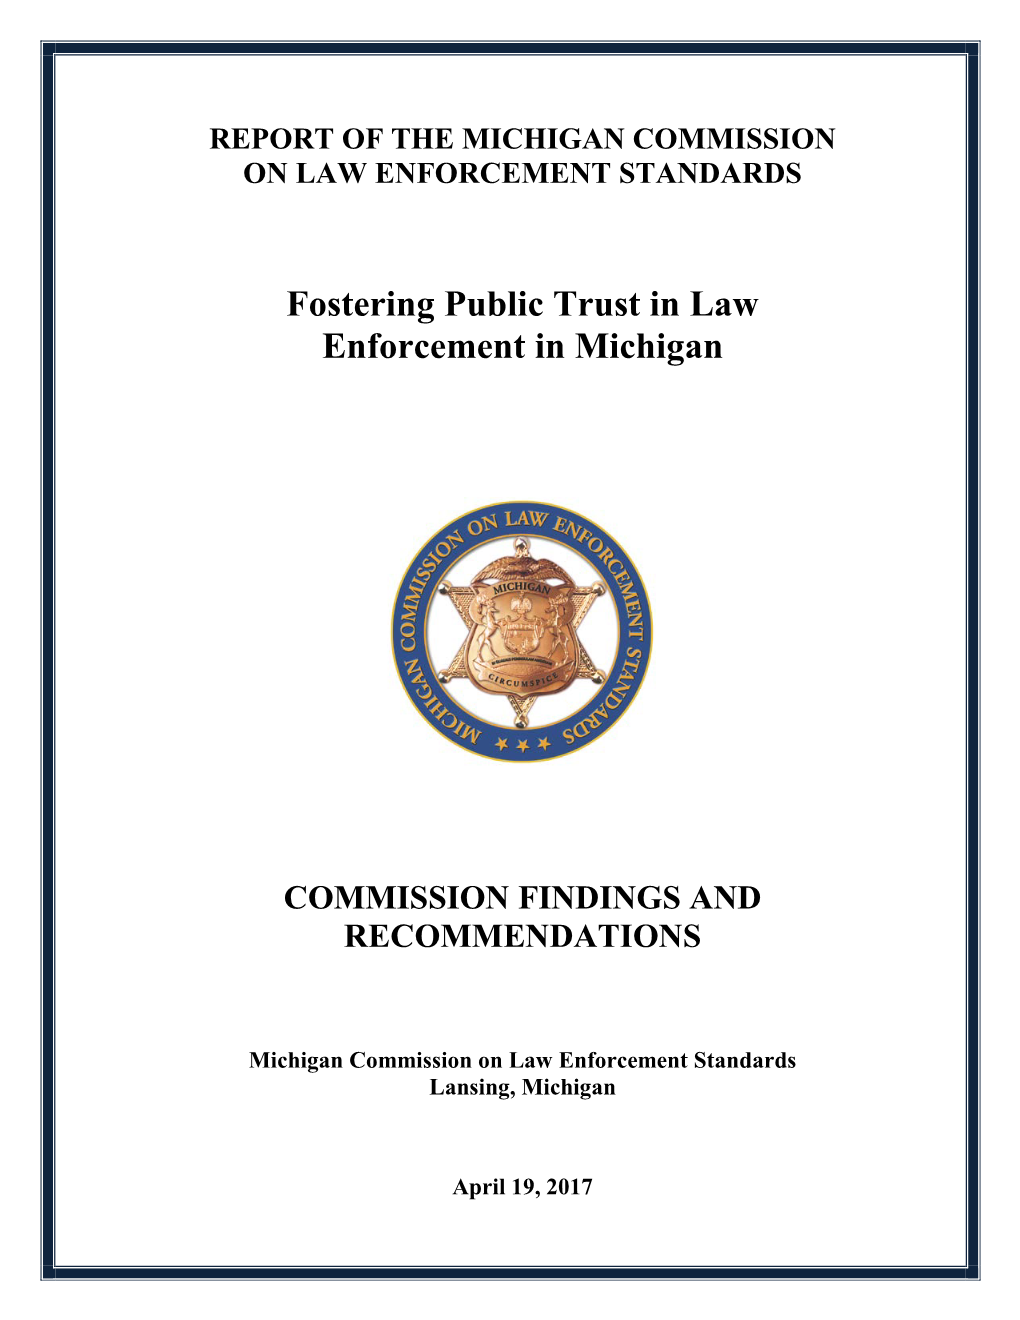 ED 2016-2 Fostering Public Trust in Law Enforcement in Michigan